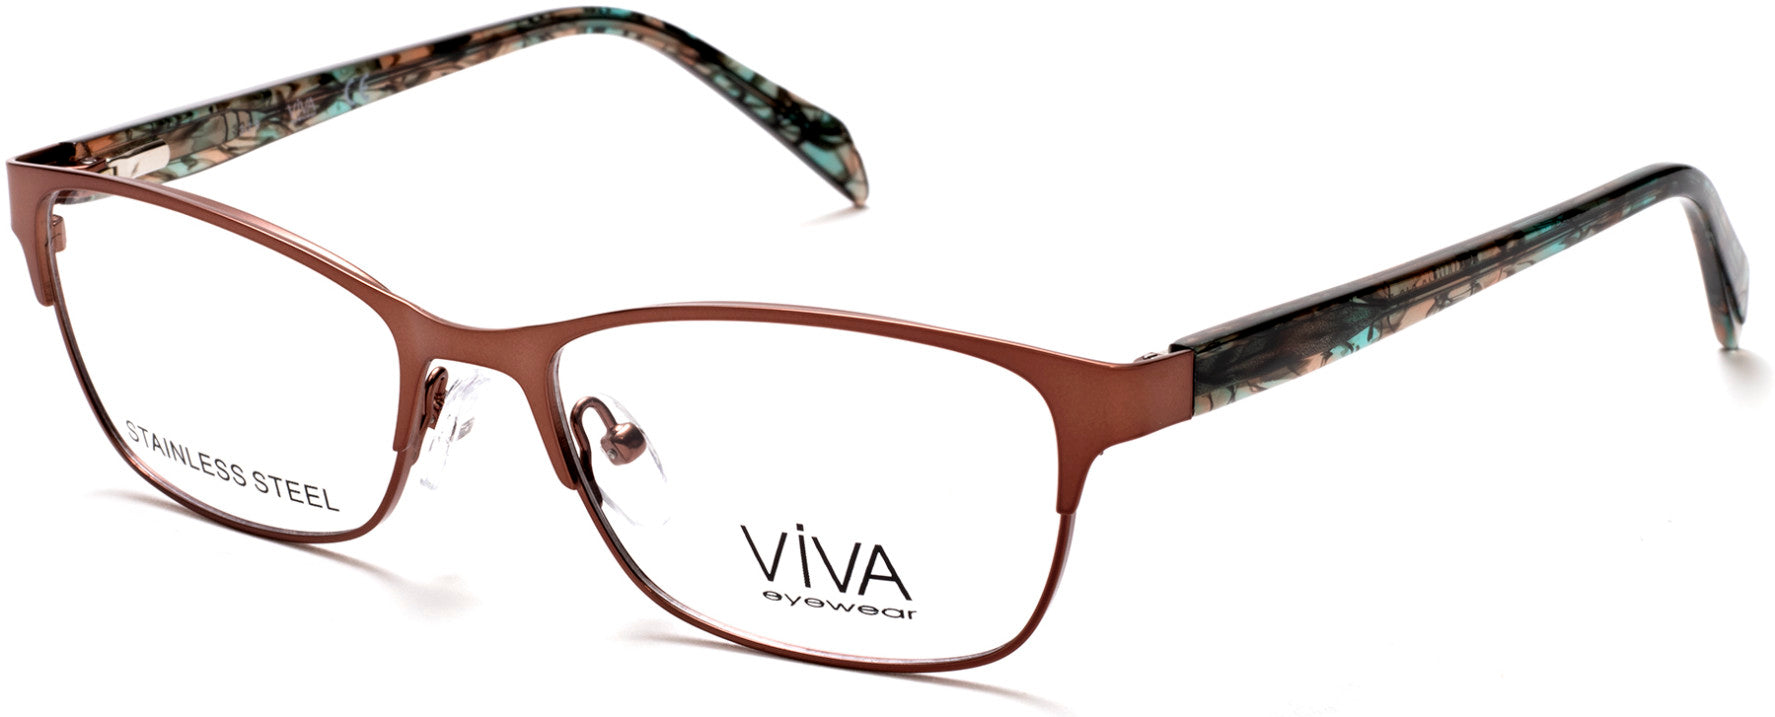 Viva VV4518 Geometric Eyeglasses 046-046 - Matte Light Brown